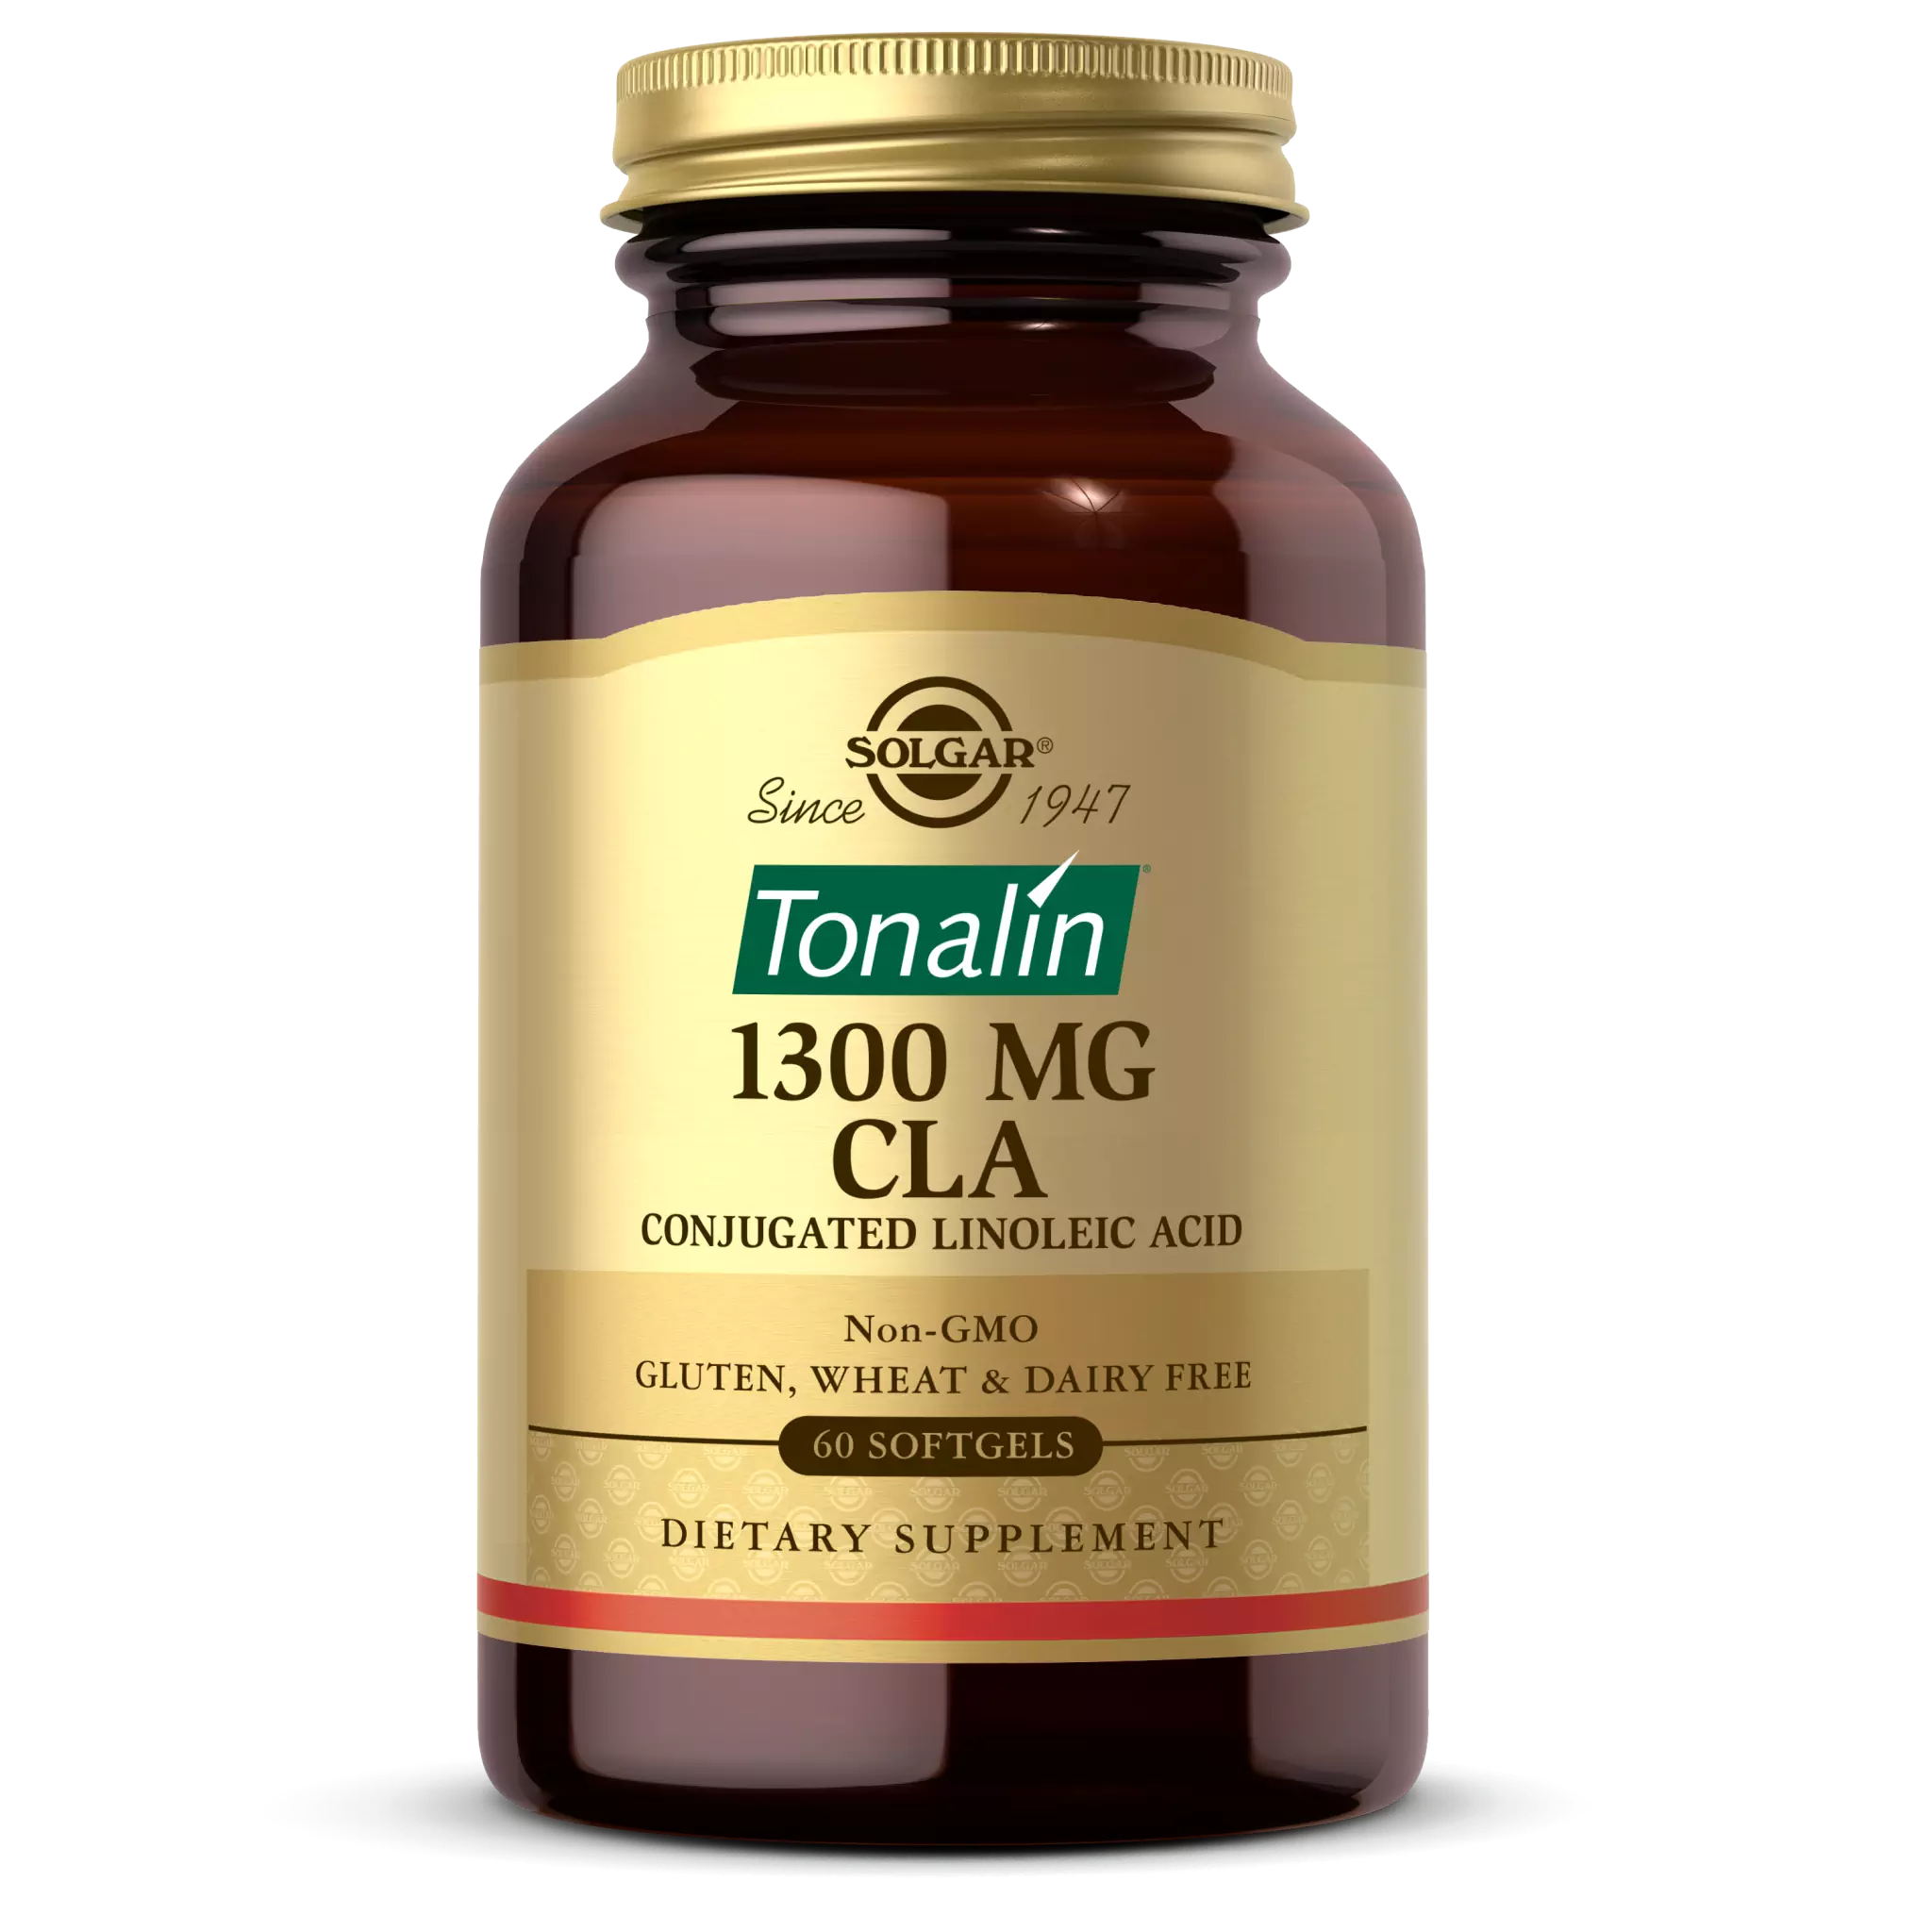 Solgar - Cla 1300 mg Tonalin